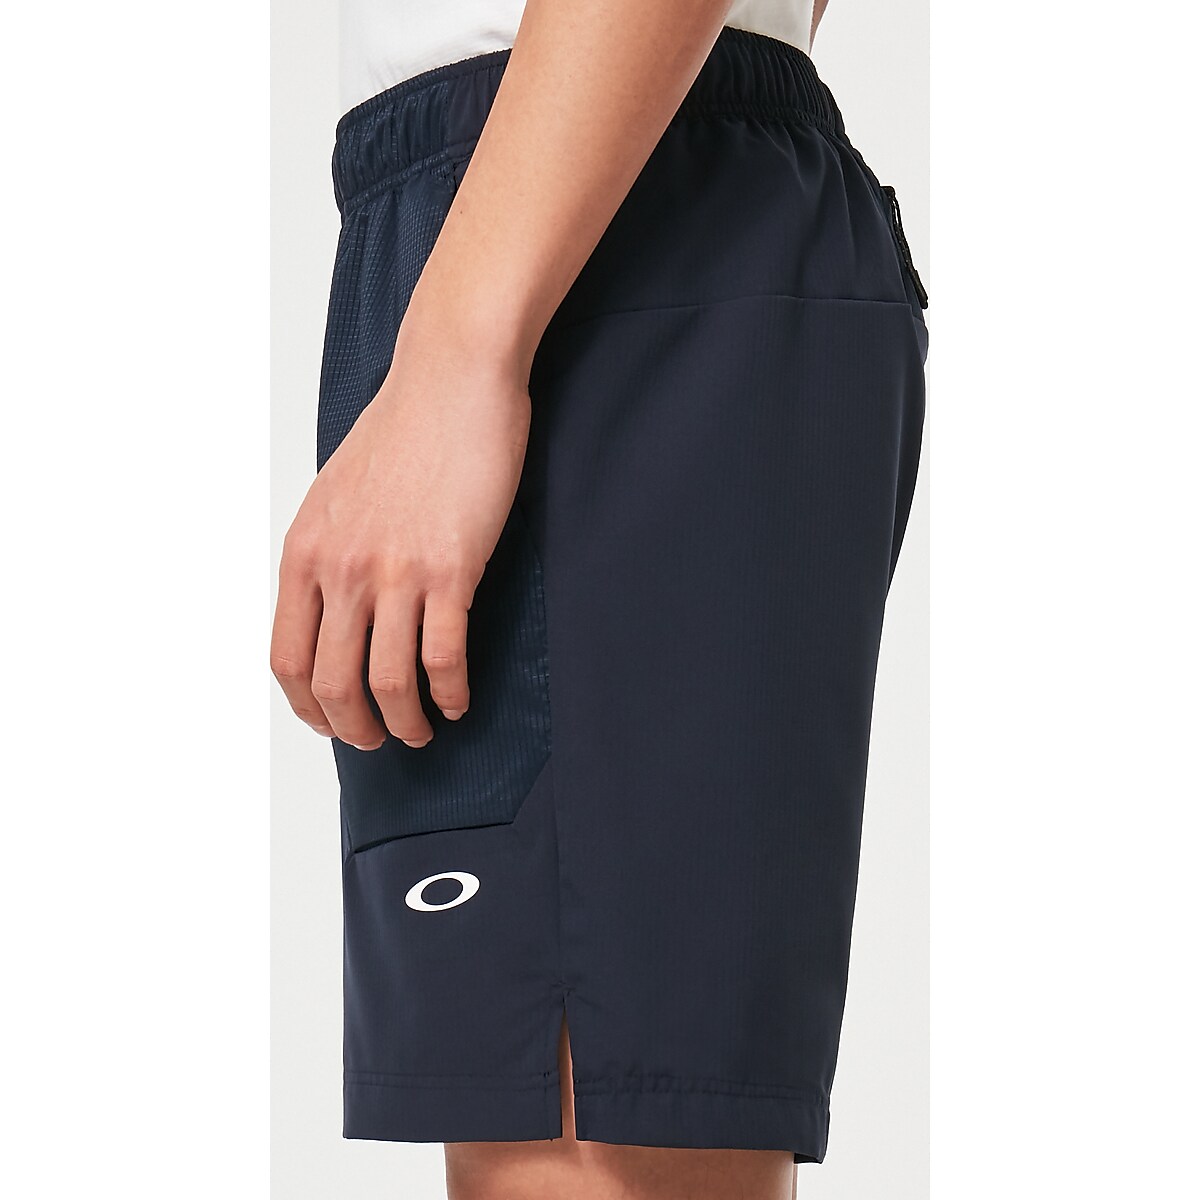 Oakley Enhance Woven Shorts 7Inch 12.0 - Fathom | Oakley JP Store